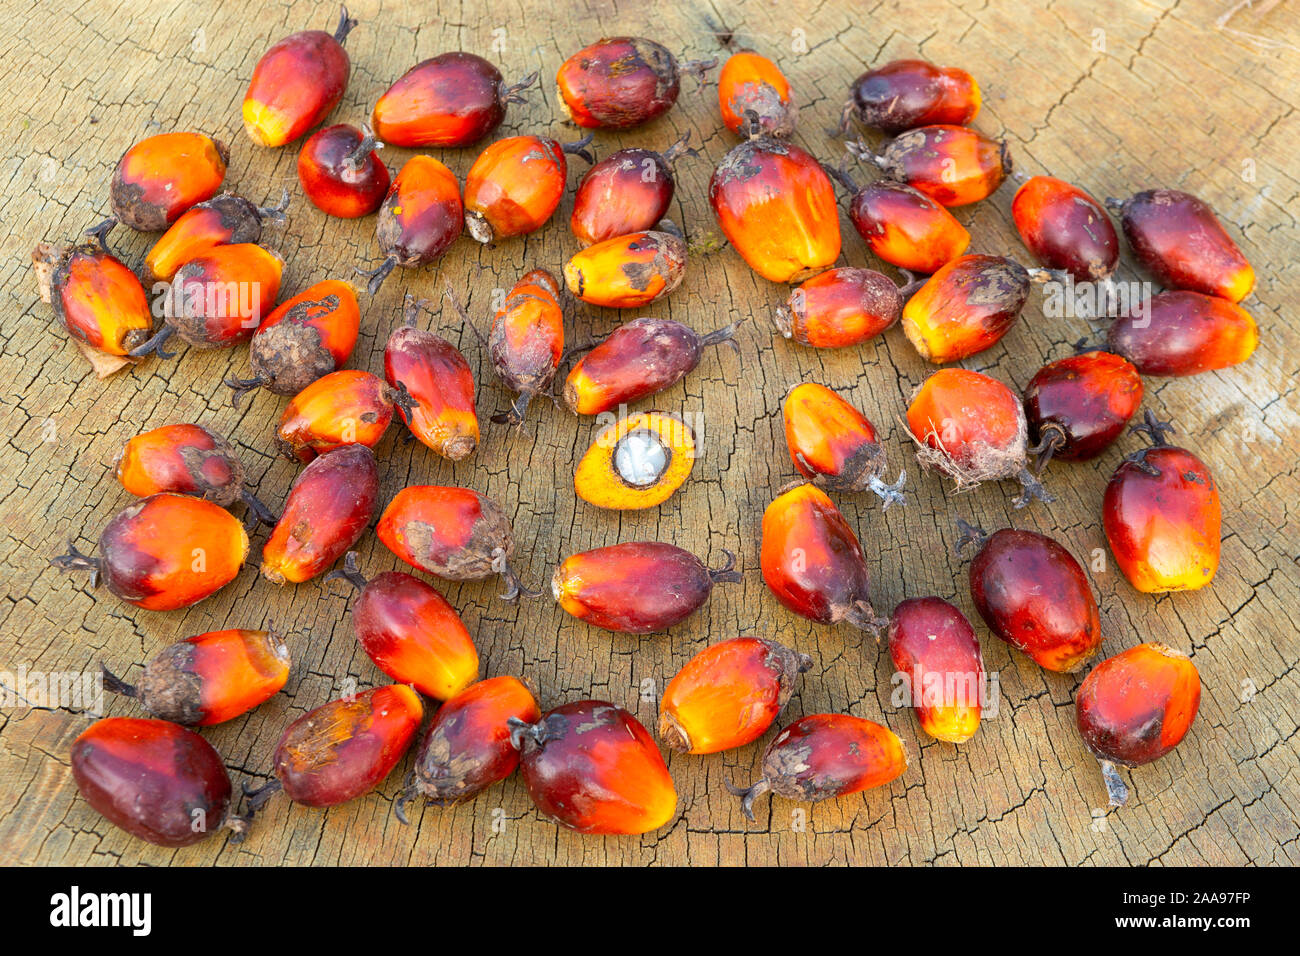 Nahaufnahme einer Gruppe von Palmöl-Früchten (Elaeis guineensis) und einer halbierten Frucht, die das Innere auf rustikalem Holztisch zeigt. Konzept der Natur, Landwirtschaft. Stockfoto